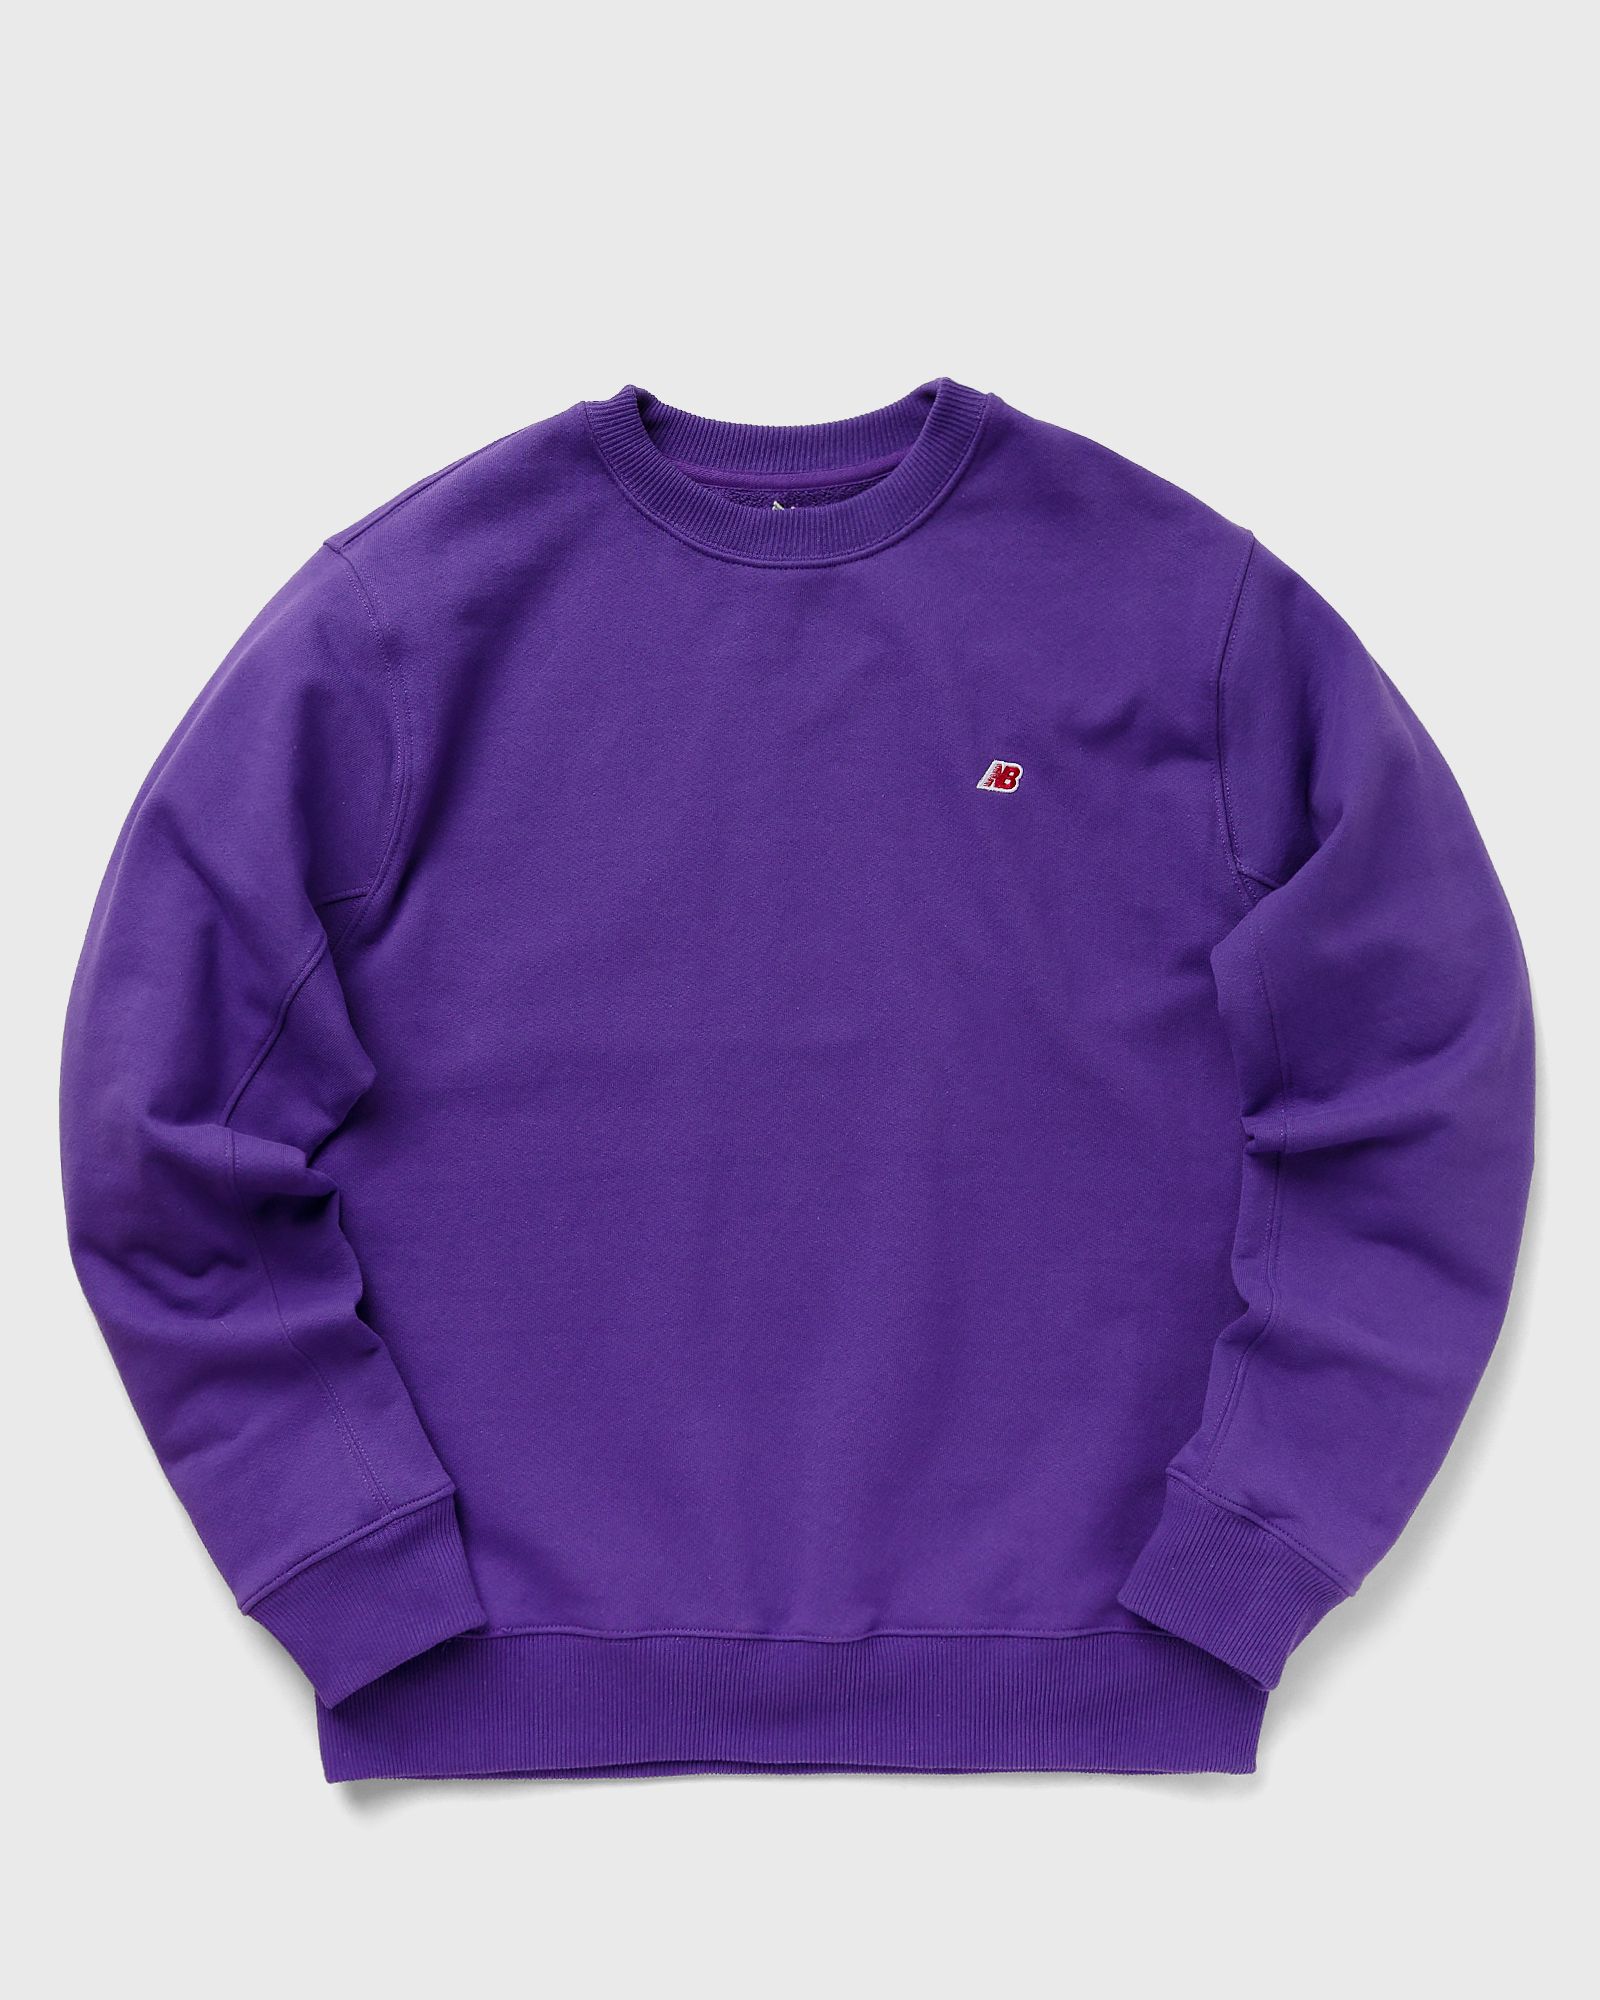 New Balance Made in USA Crew Sweatshirt men Sweatshirts purple in Größe:S von New Balance